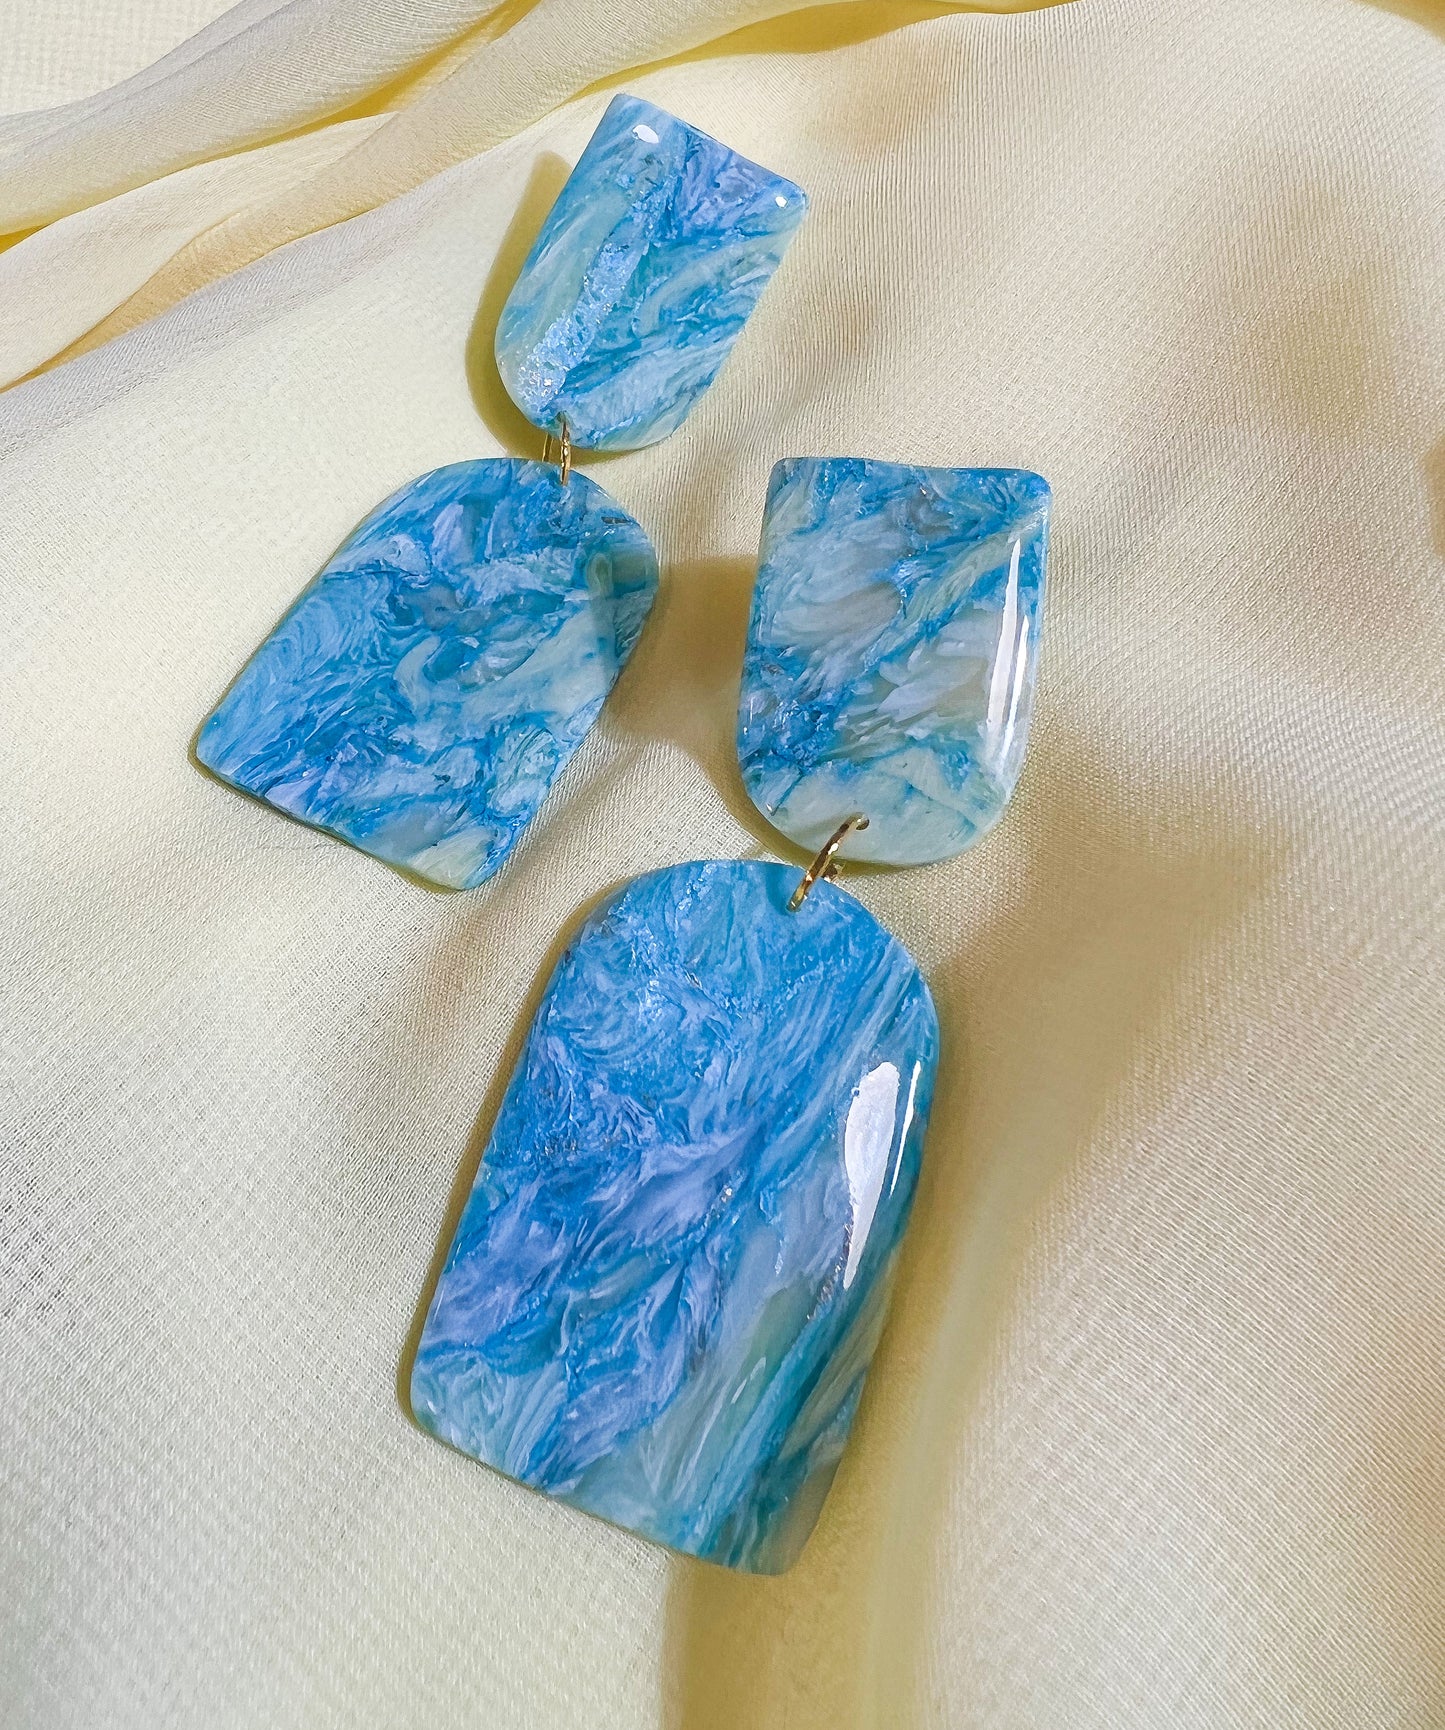 Blue Apatite Stones